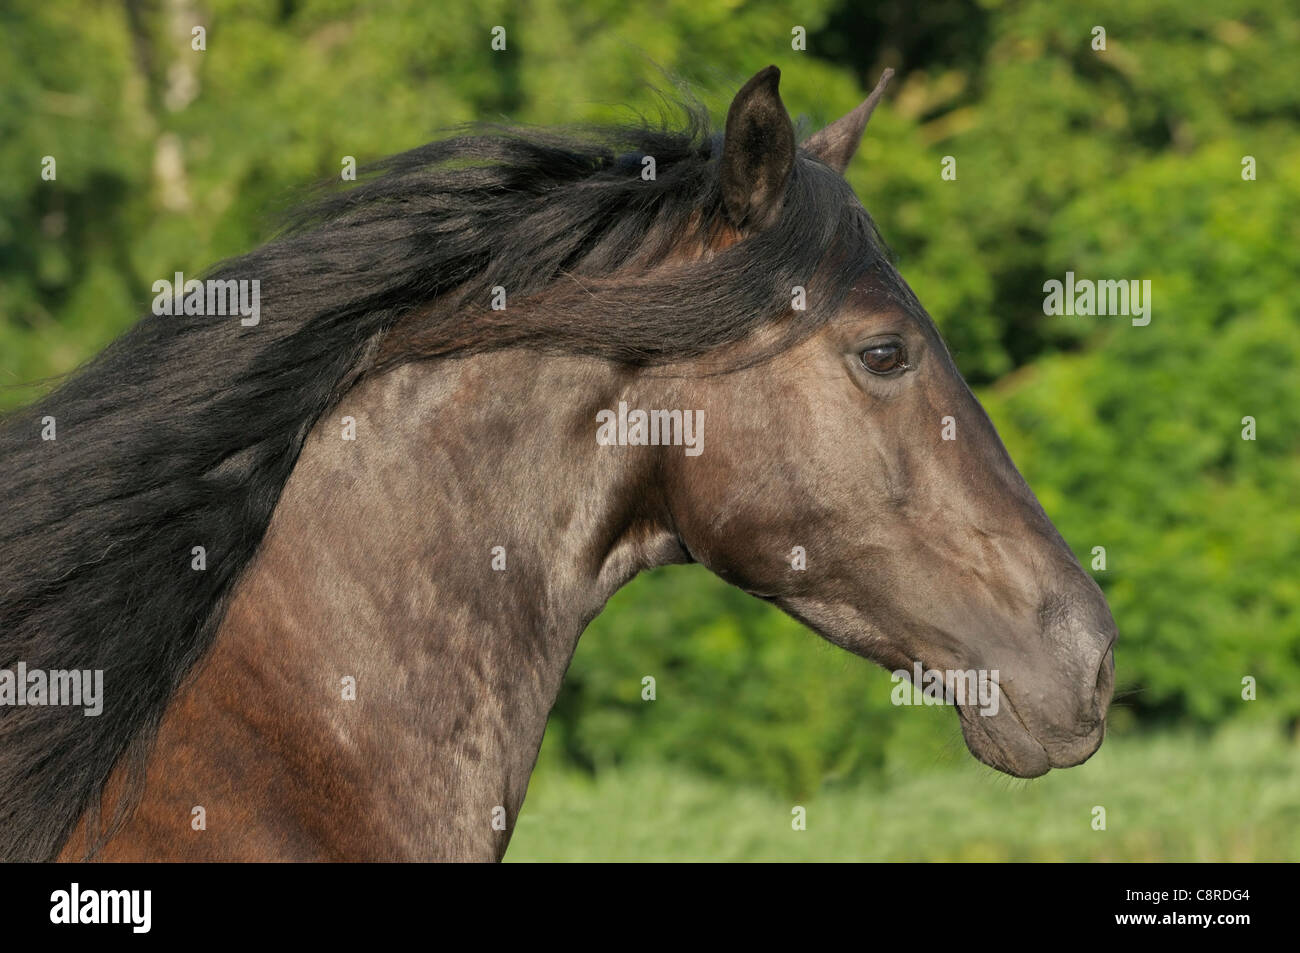 Spanish Mustang horse Stock Photo